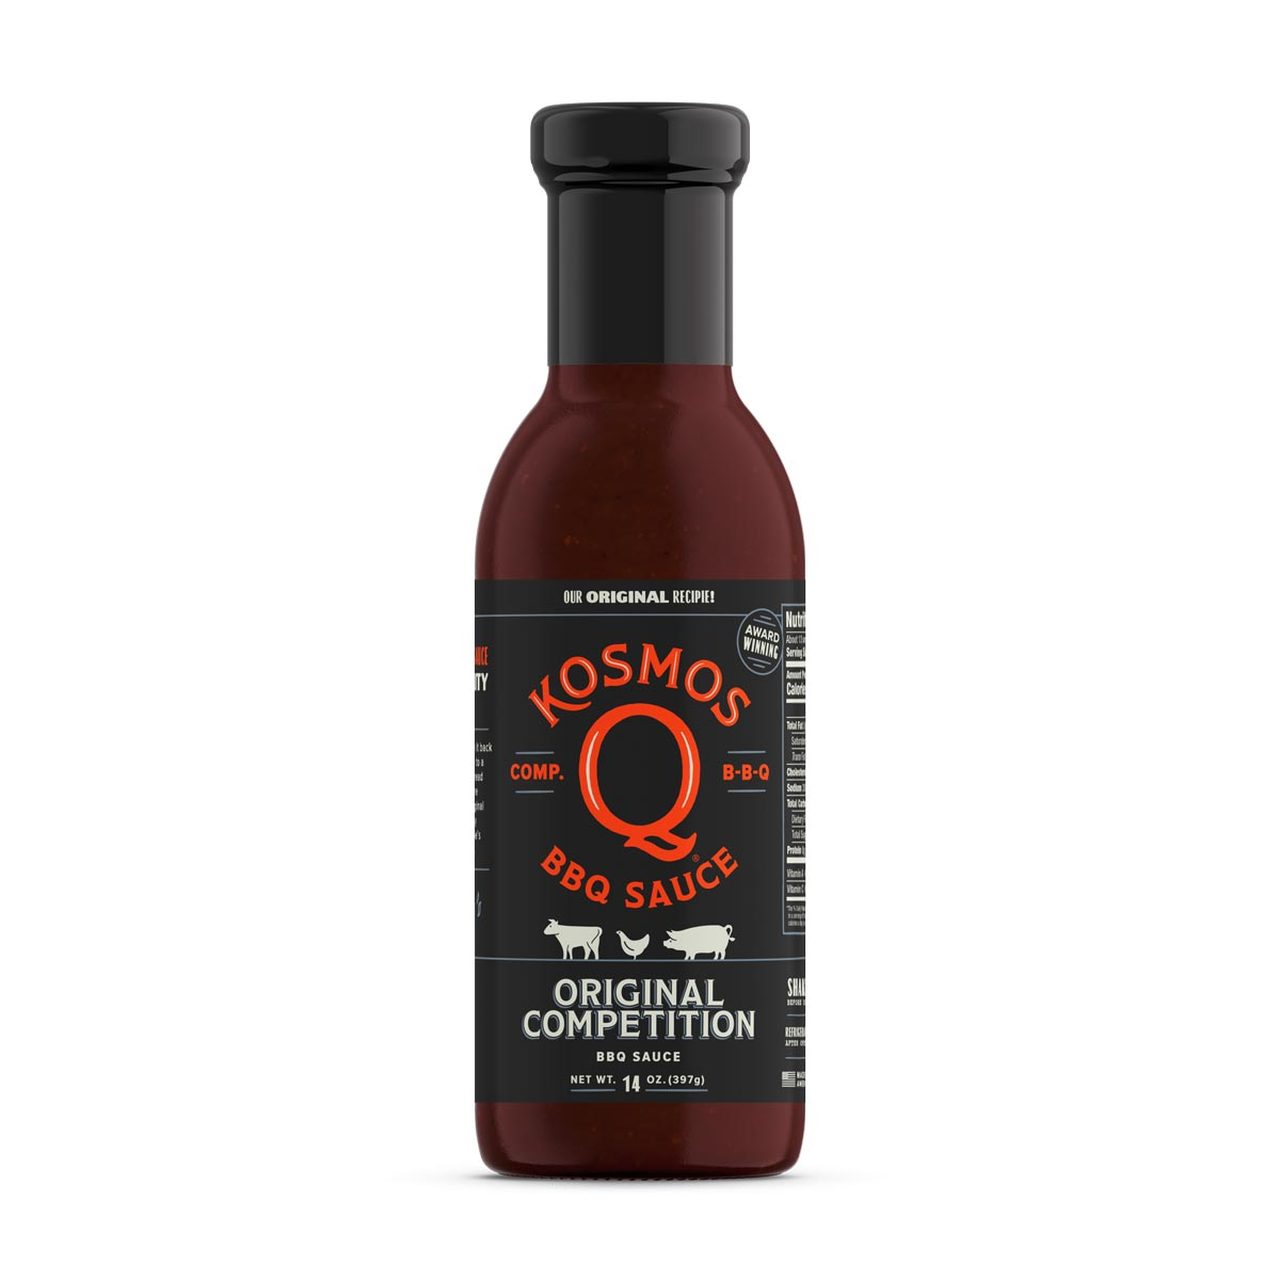 KOSMO'S Q Sauces - Original Competition